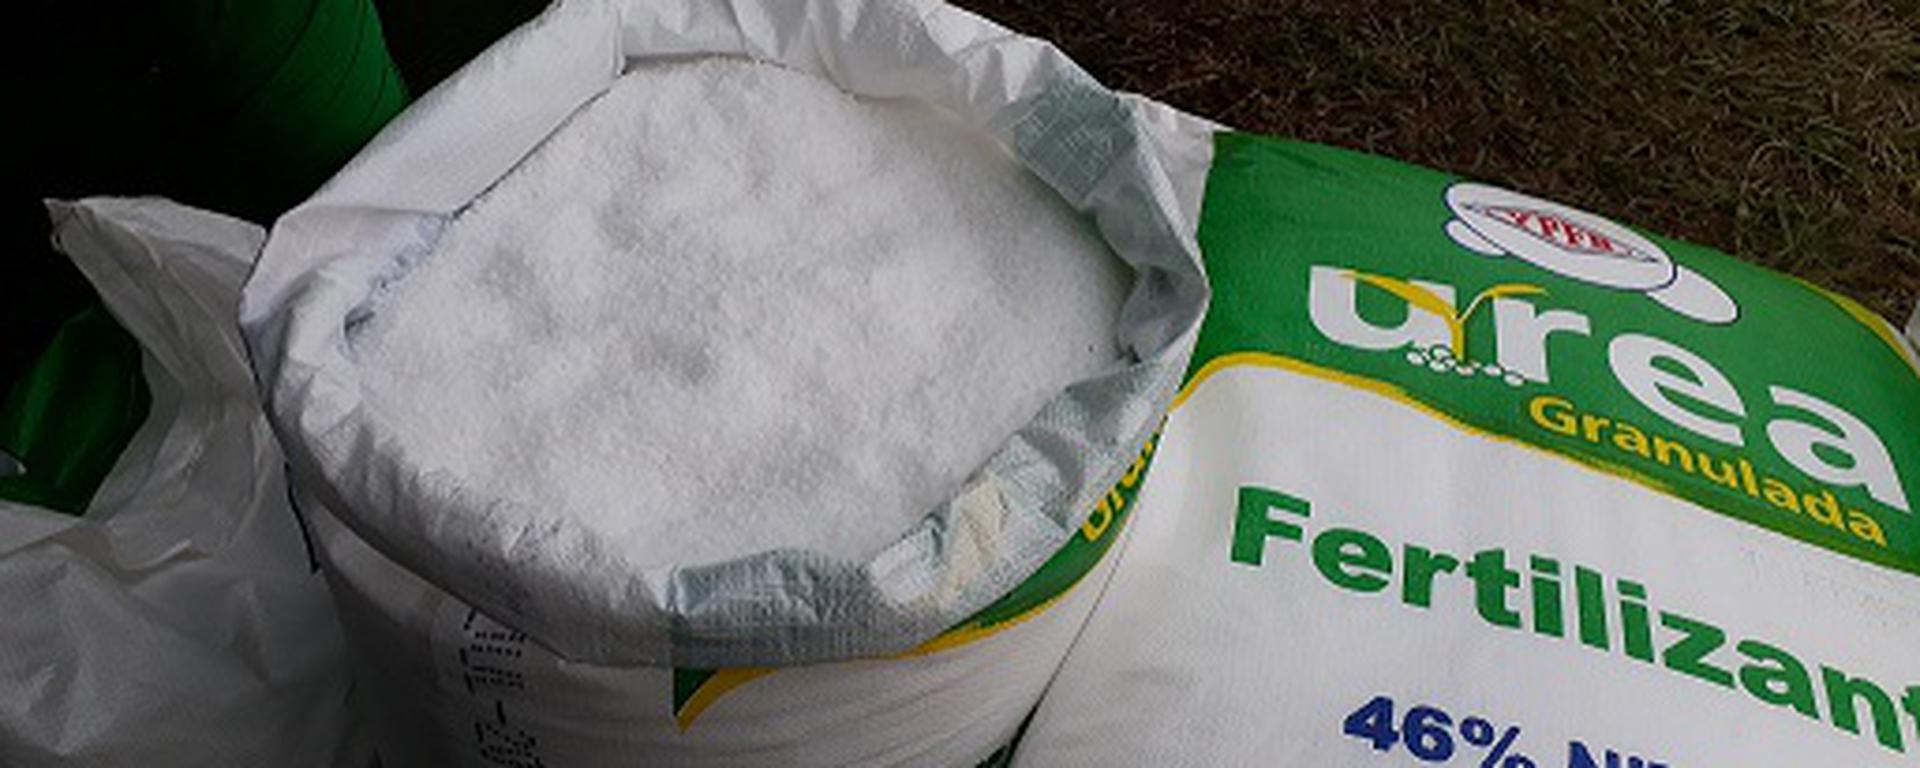 Tercera licitación para compra de fertilizantes sin opción a margen de error